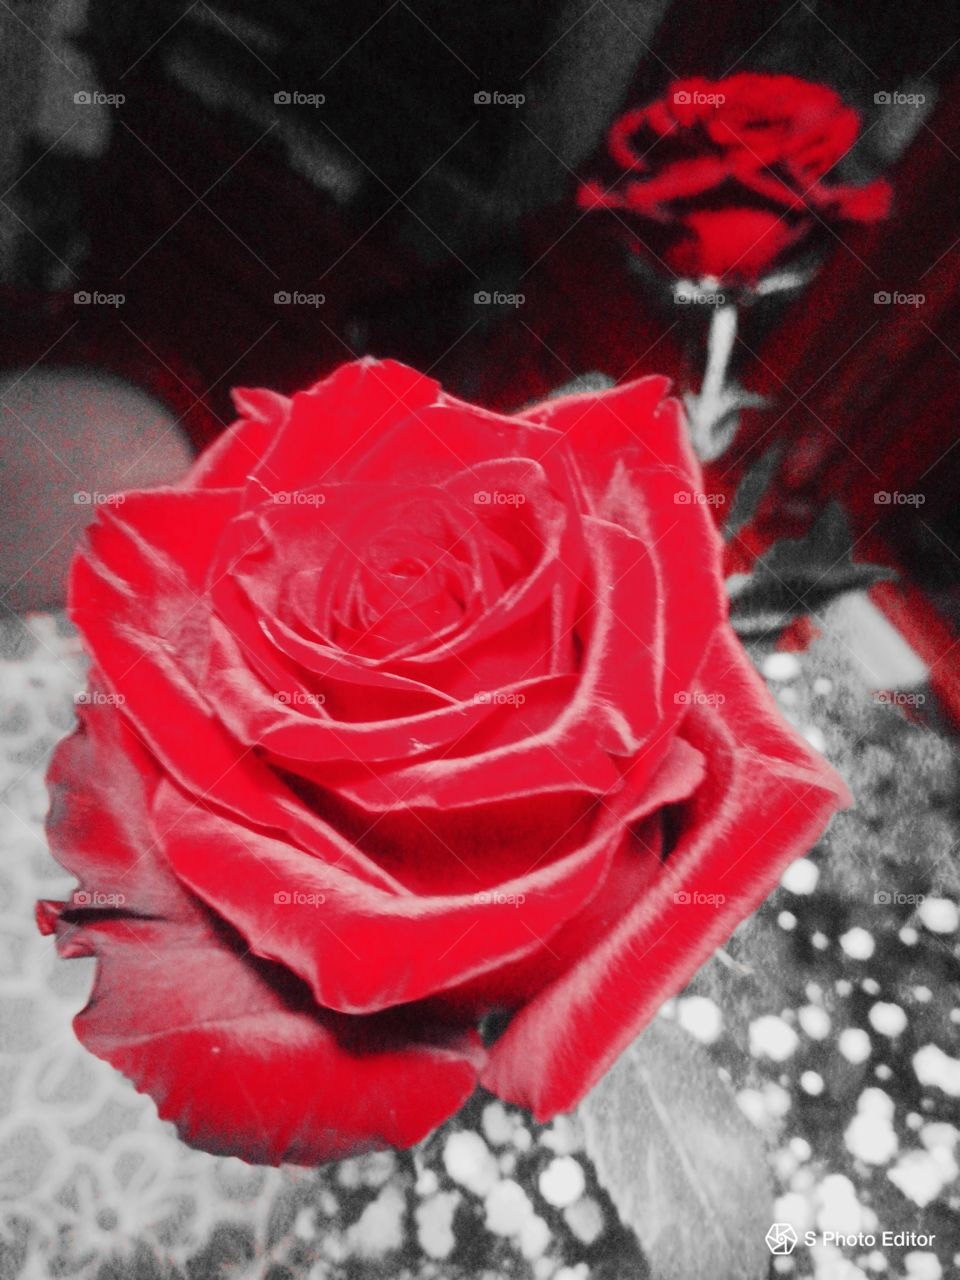 rose rosse